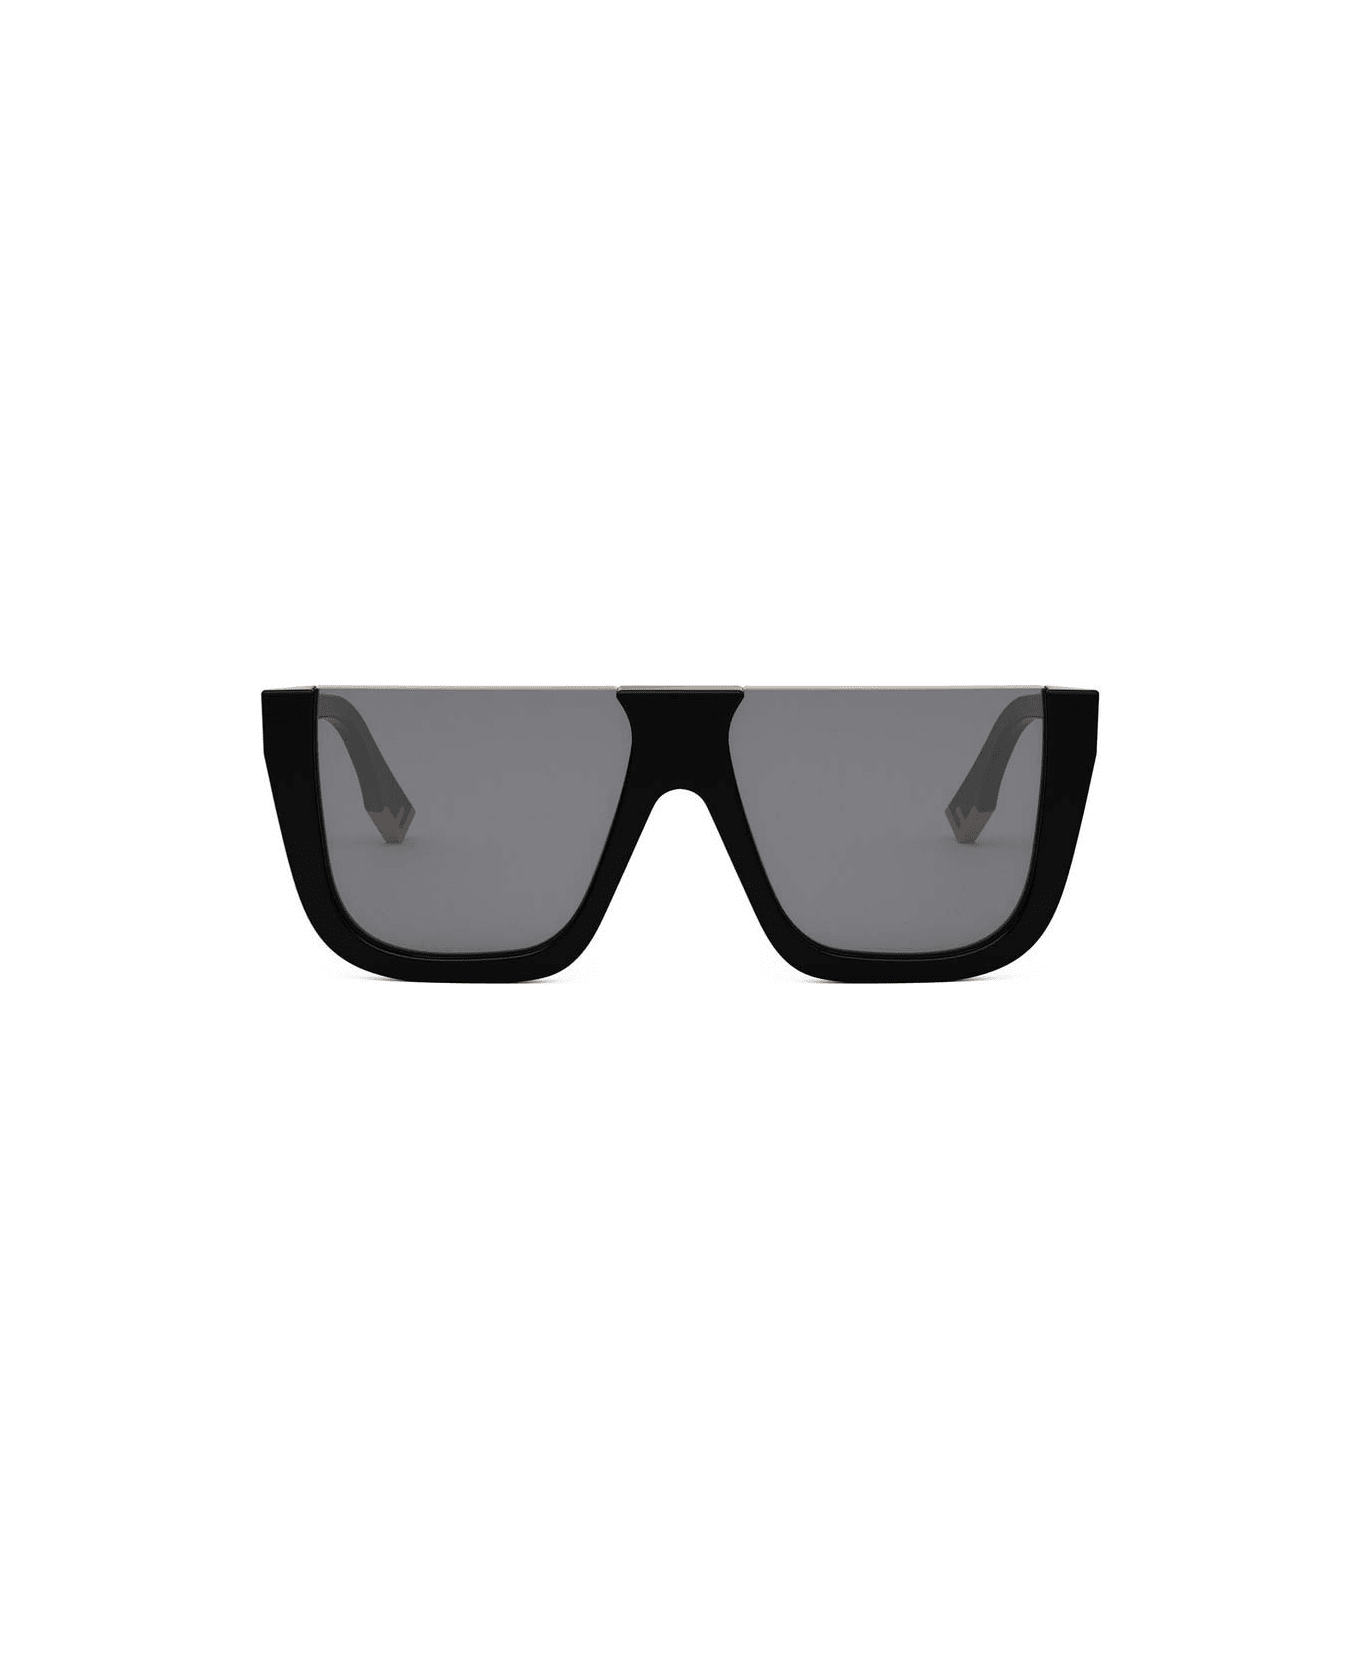 Fendi Eyewear Sunglasses - Nero/Grigio サングラス